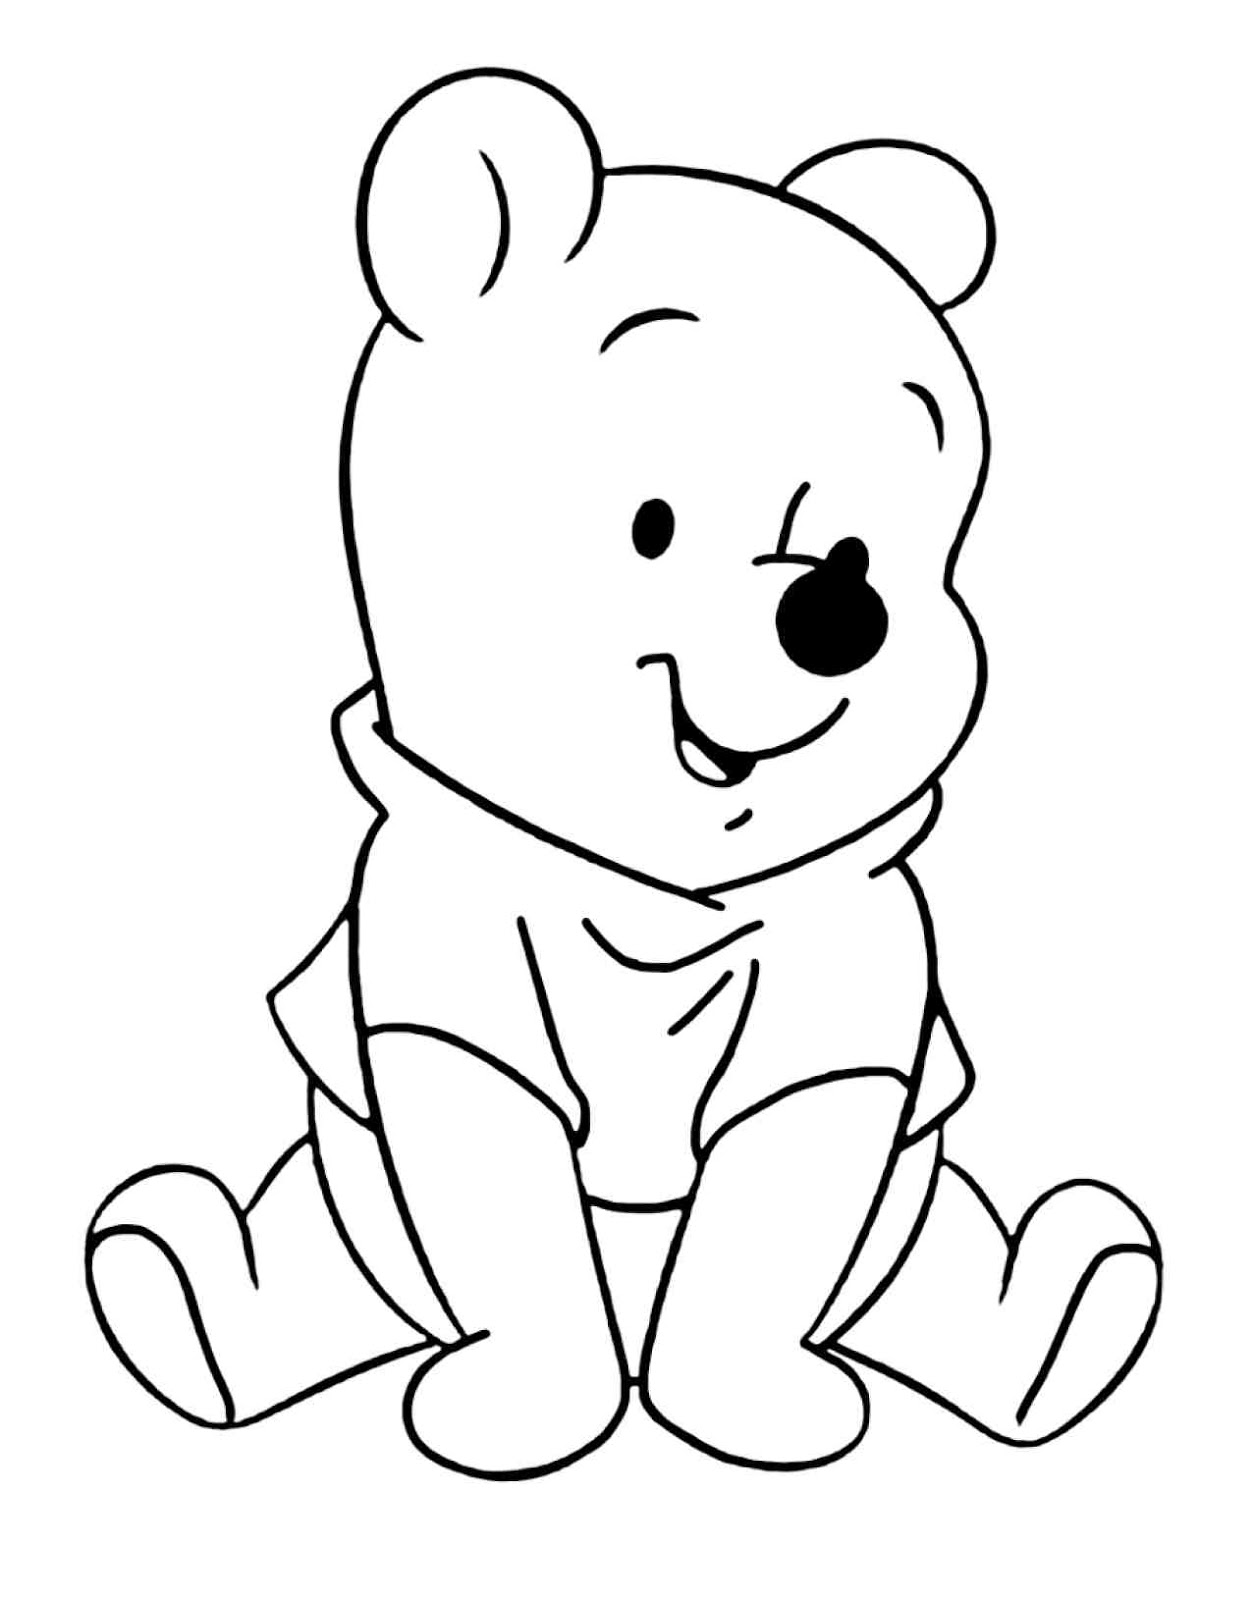 colorear tus dibujos: Imágenes para colorear winnie the pooh Disney